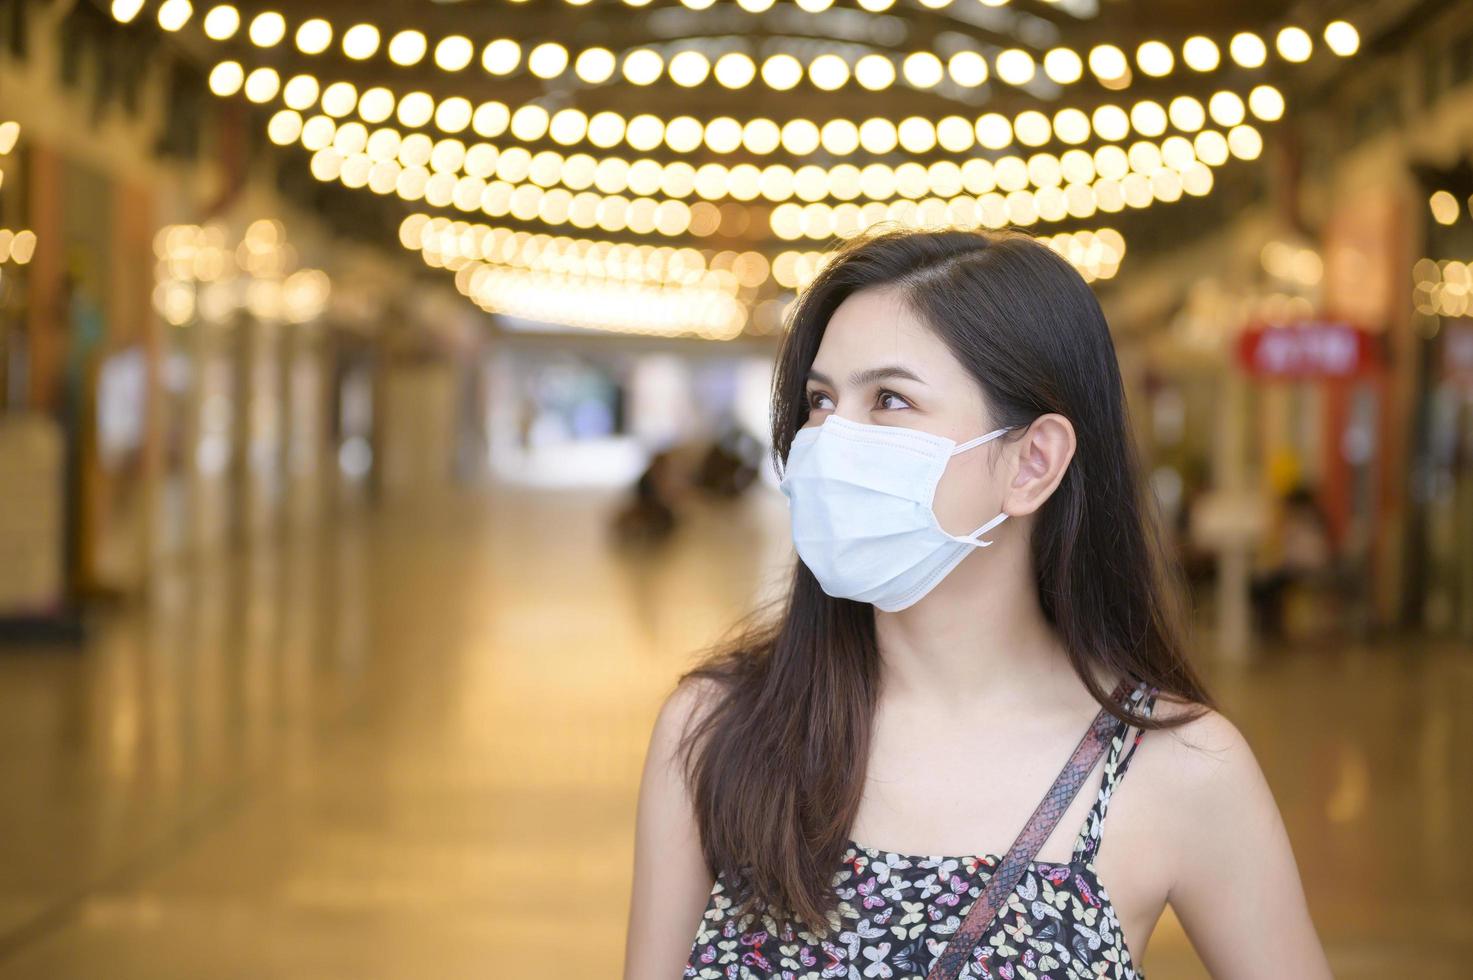 eine junge asiatische frau trägt schutzmaske beim einkaufen im einkaufszentrum, coronavirus-schutz, neues normales lebensstilkonzept foto